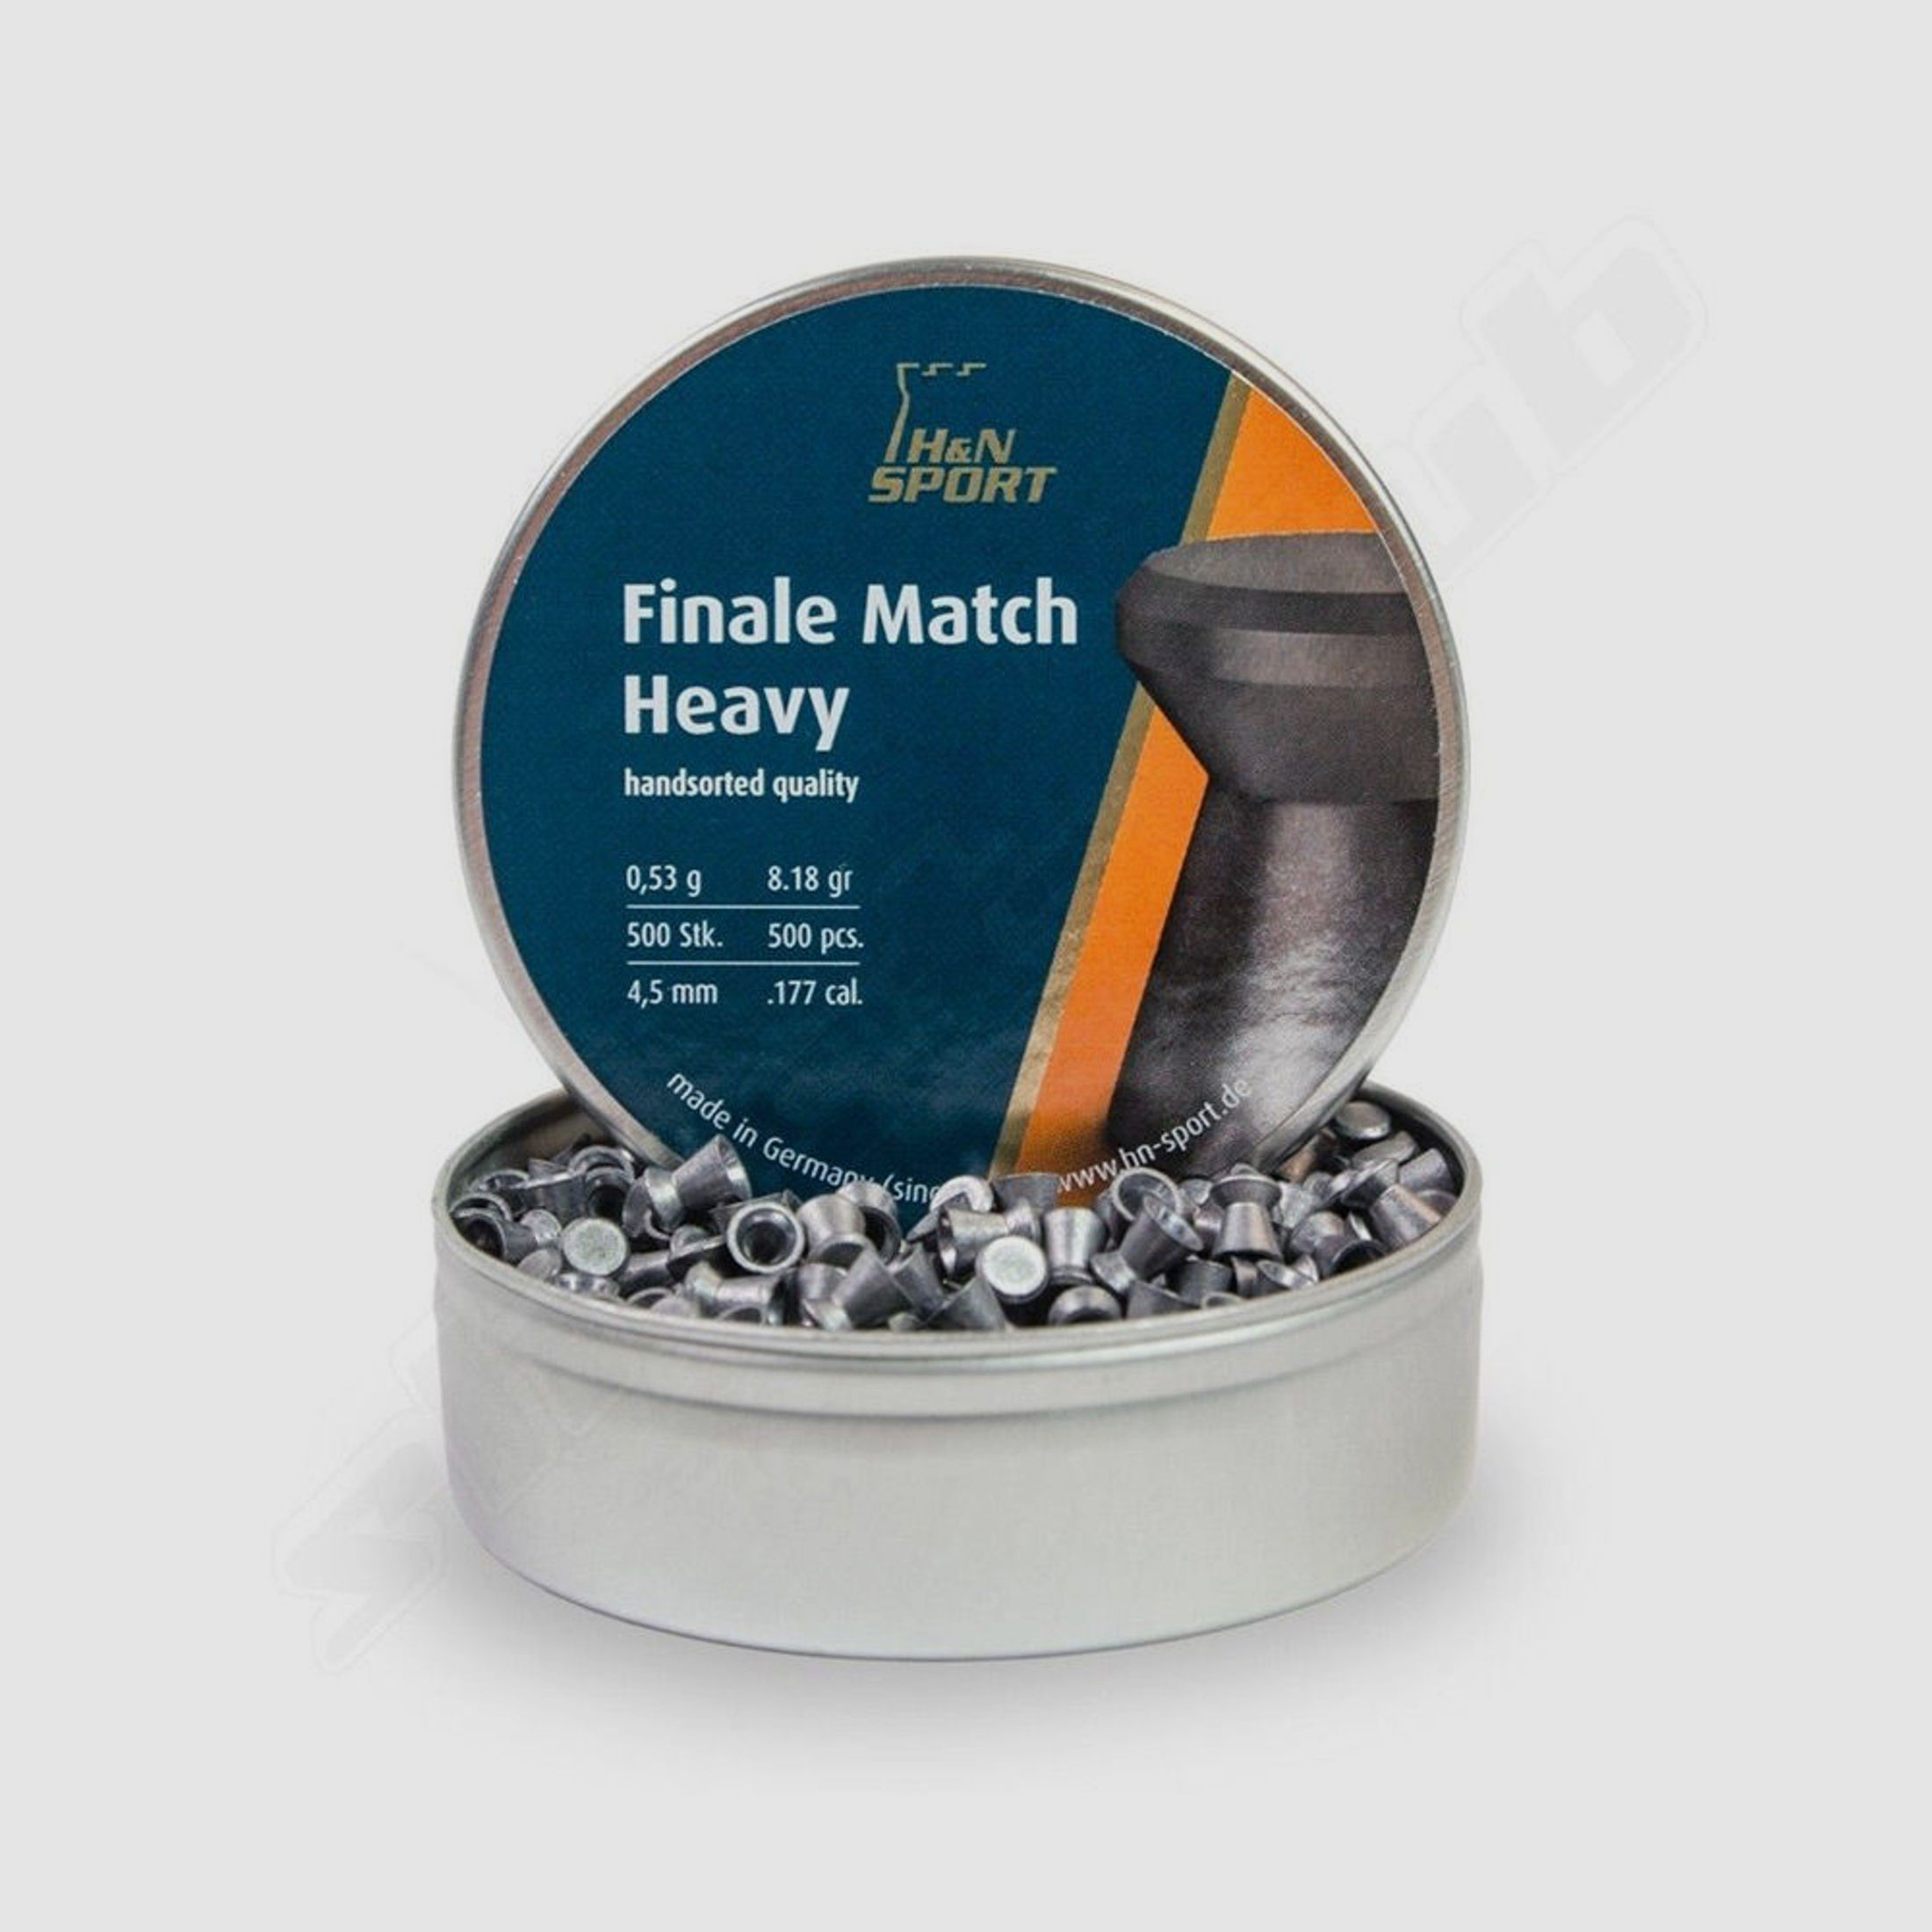 H&N Finale Match Heavy Diabolos Kaliber 4,5mm 0,53g - 500 Stk.